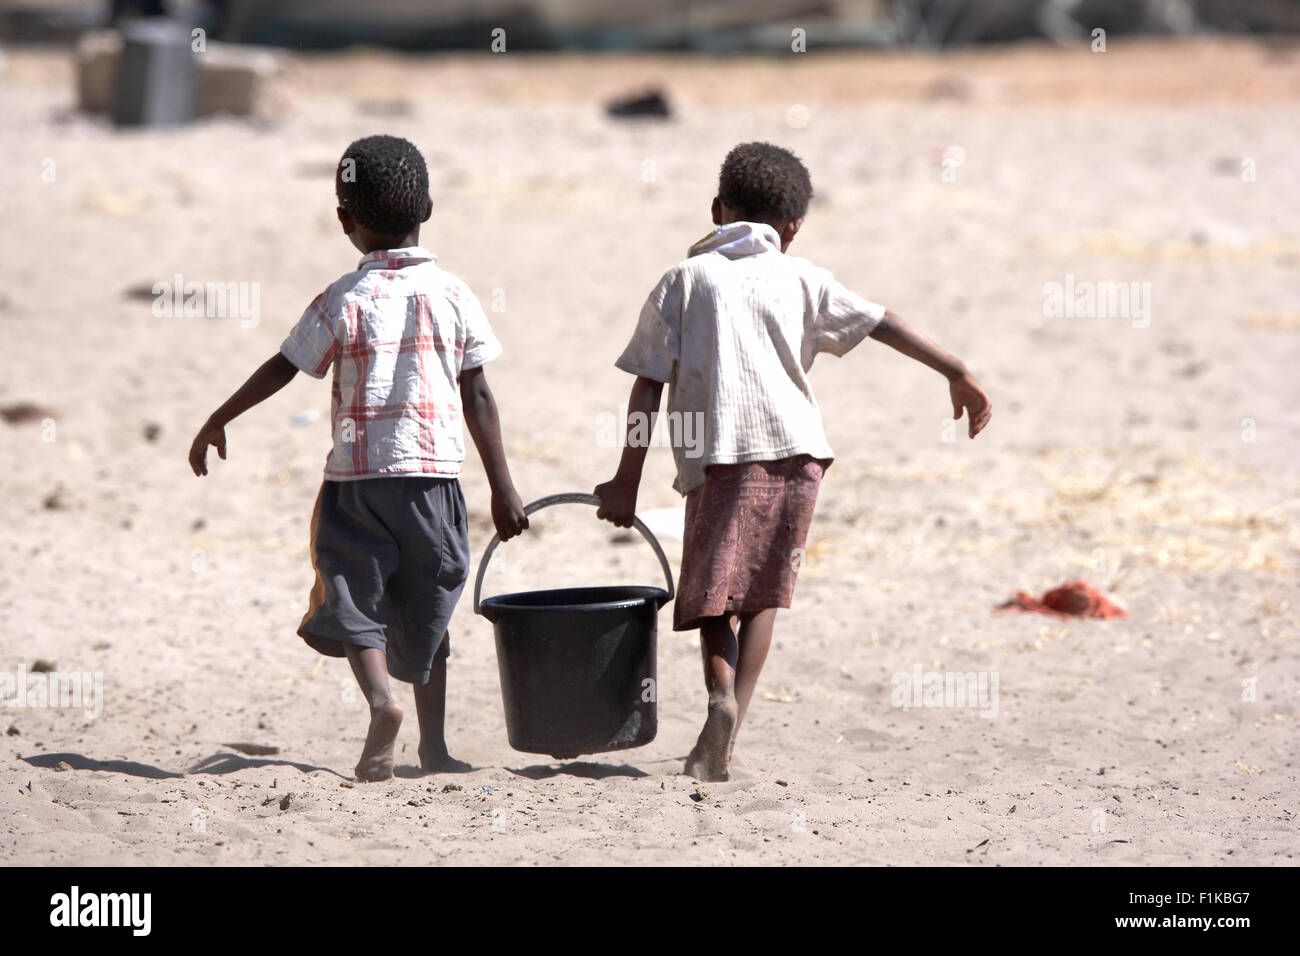 Dos niños bushman llevando un balde de agua, Xai Xai, Botswana Foto de stock